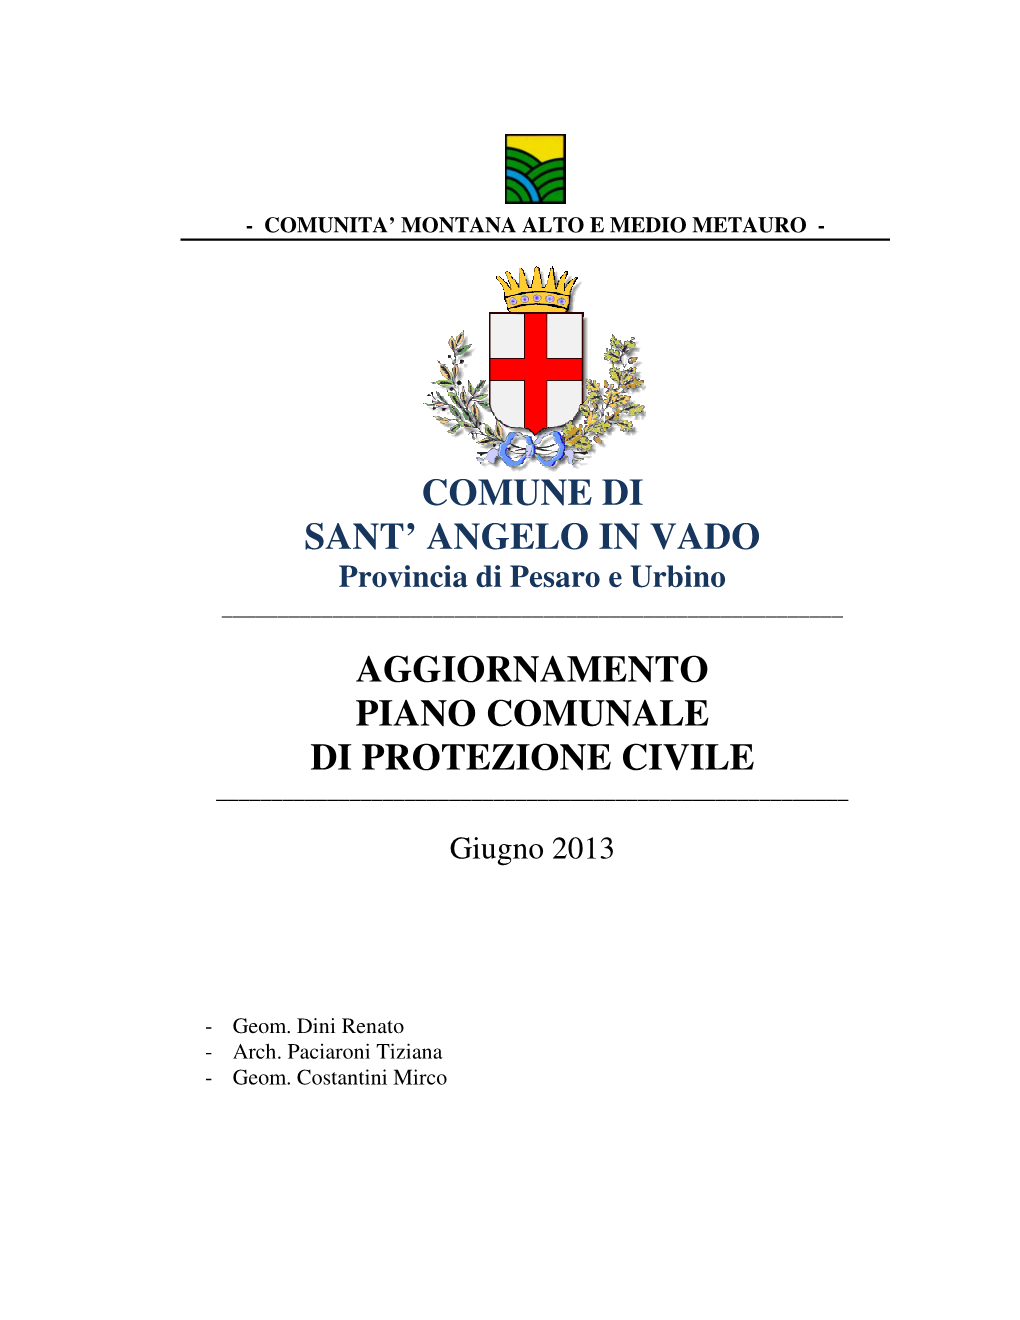 Comune Di Sant' Angelo in Vado Aggiornamento Piano Comunale Di Protezione Civile